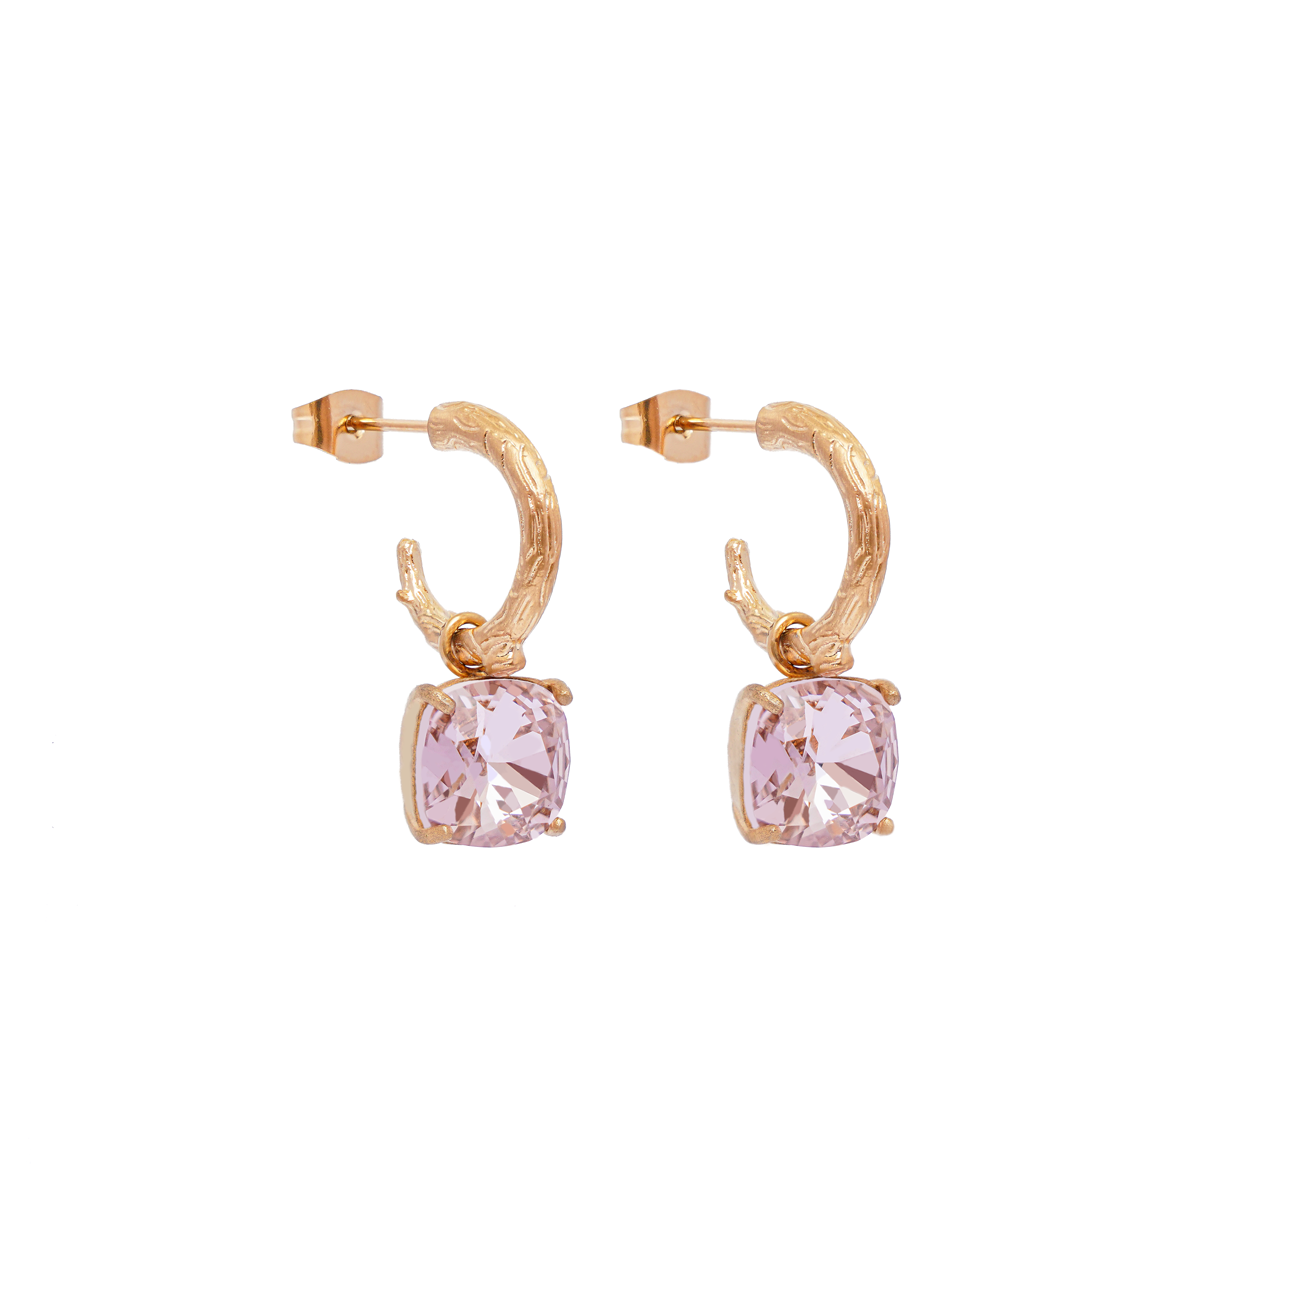 Carla Swarovski earrings - Pink favourite